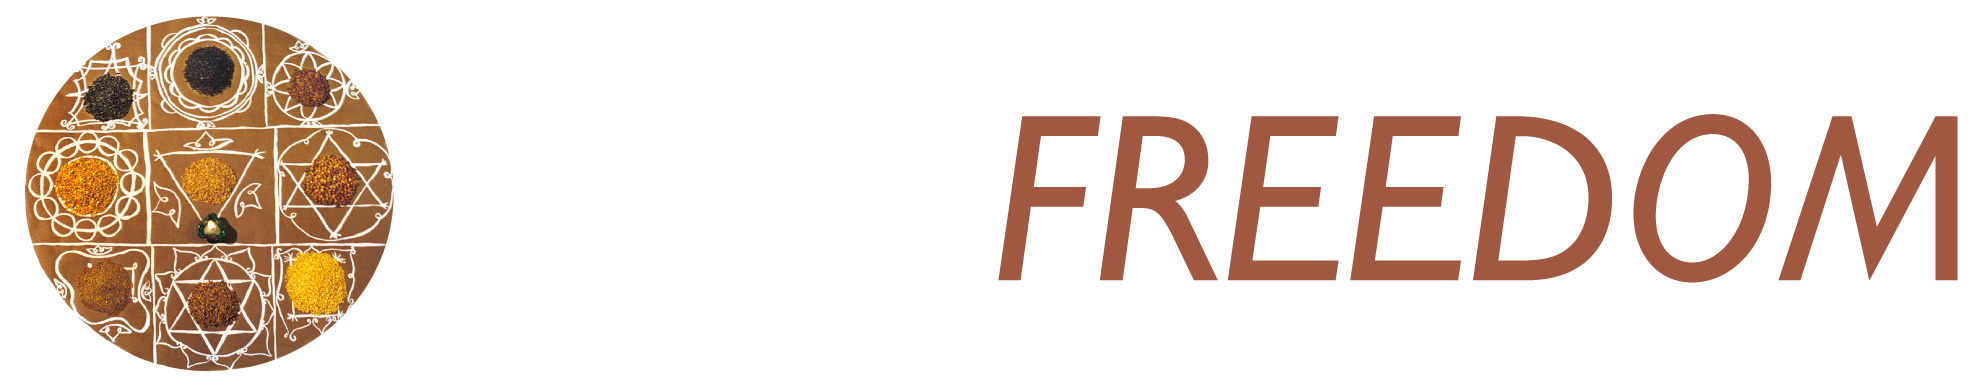 Seedfreedom logotype